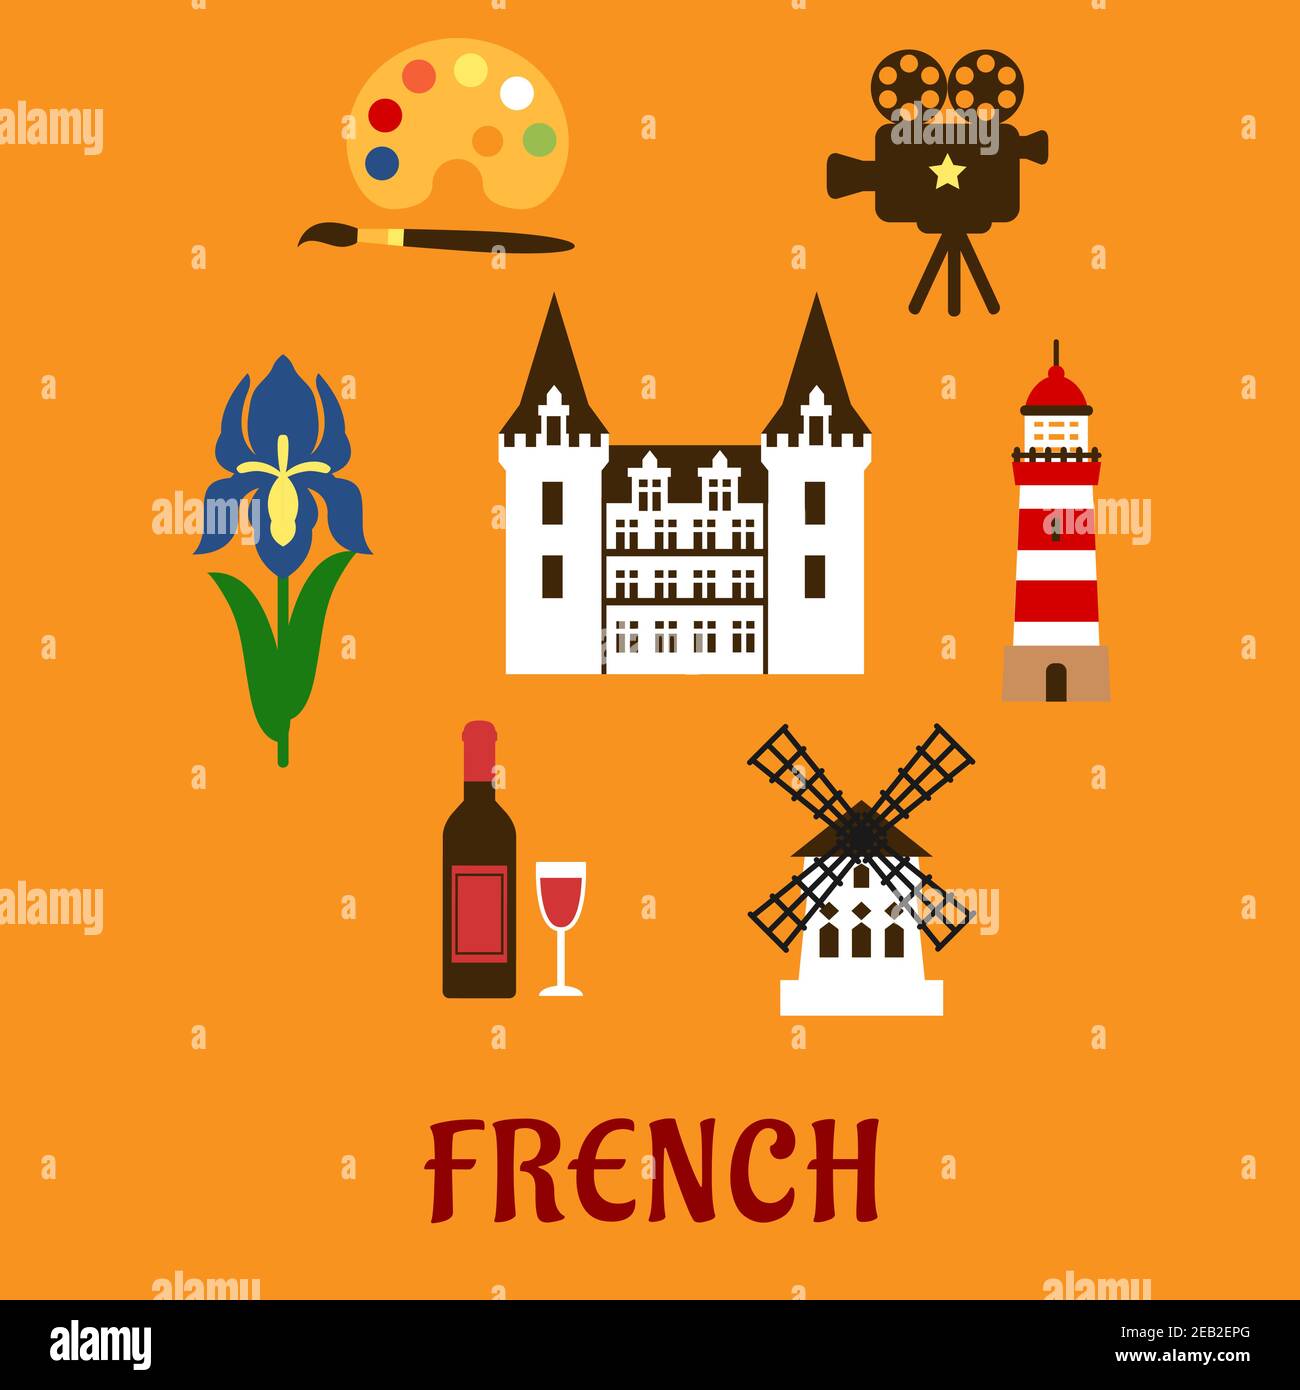 Französische nationale flache Ikonen mit elegantem Schloss, umgeben von einer Flasche Rotwein mit Glas, Windmühle, Filmprojektor, Leuchtturm, Farbpalette, roya Stock Vektor